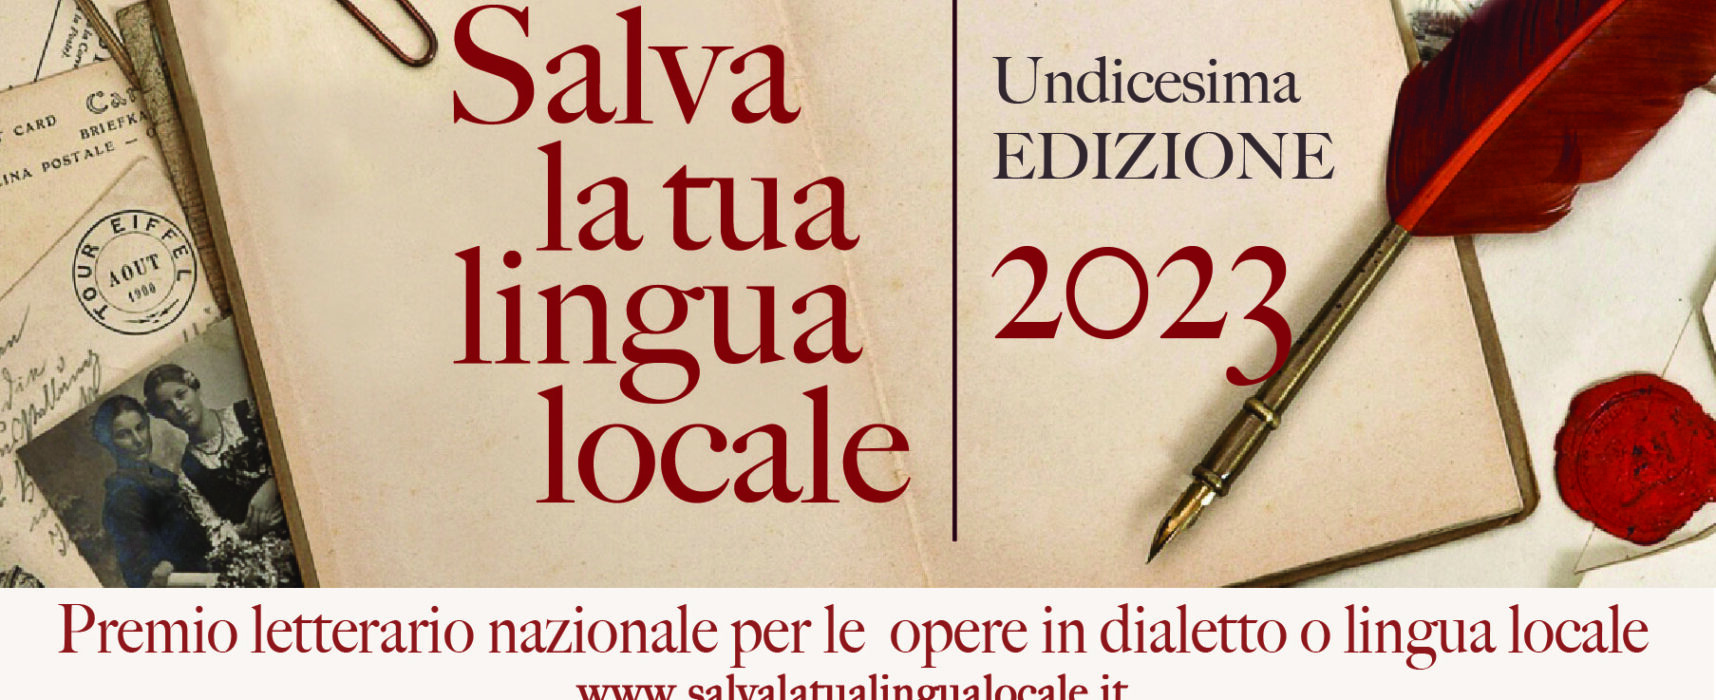 Unpli, “Salva la tua lingua locale”: pubblicato il bando dell’XI edizione del Premio letterario